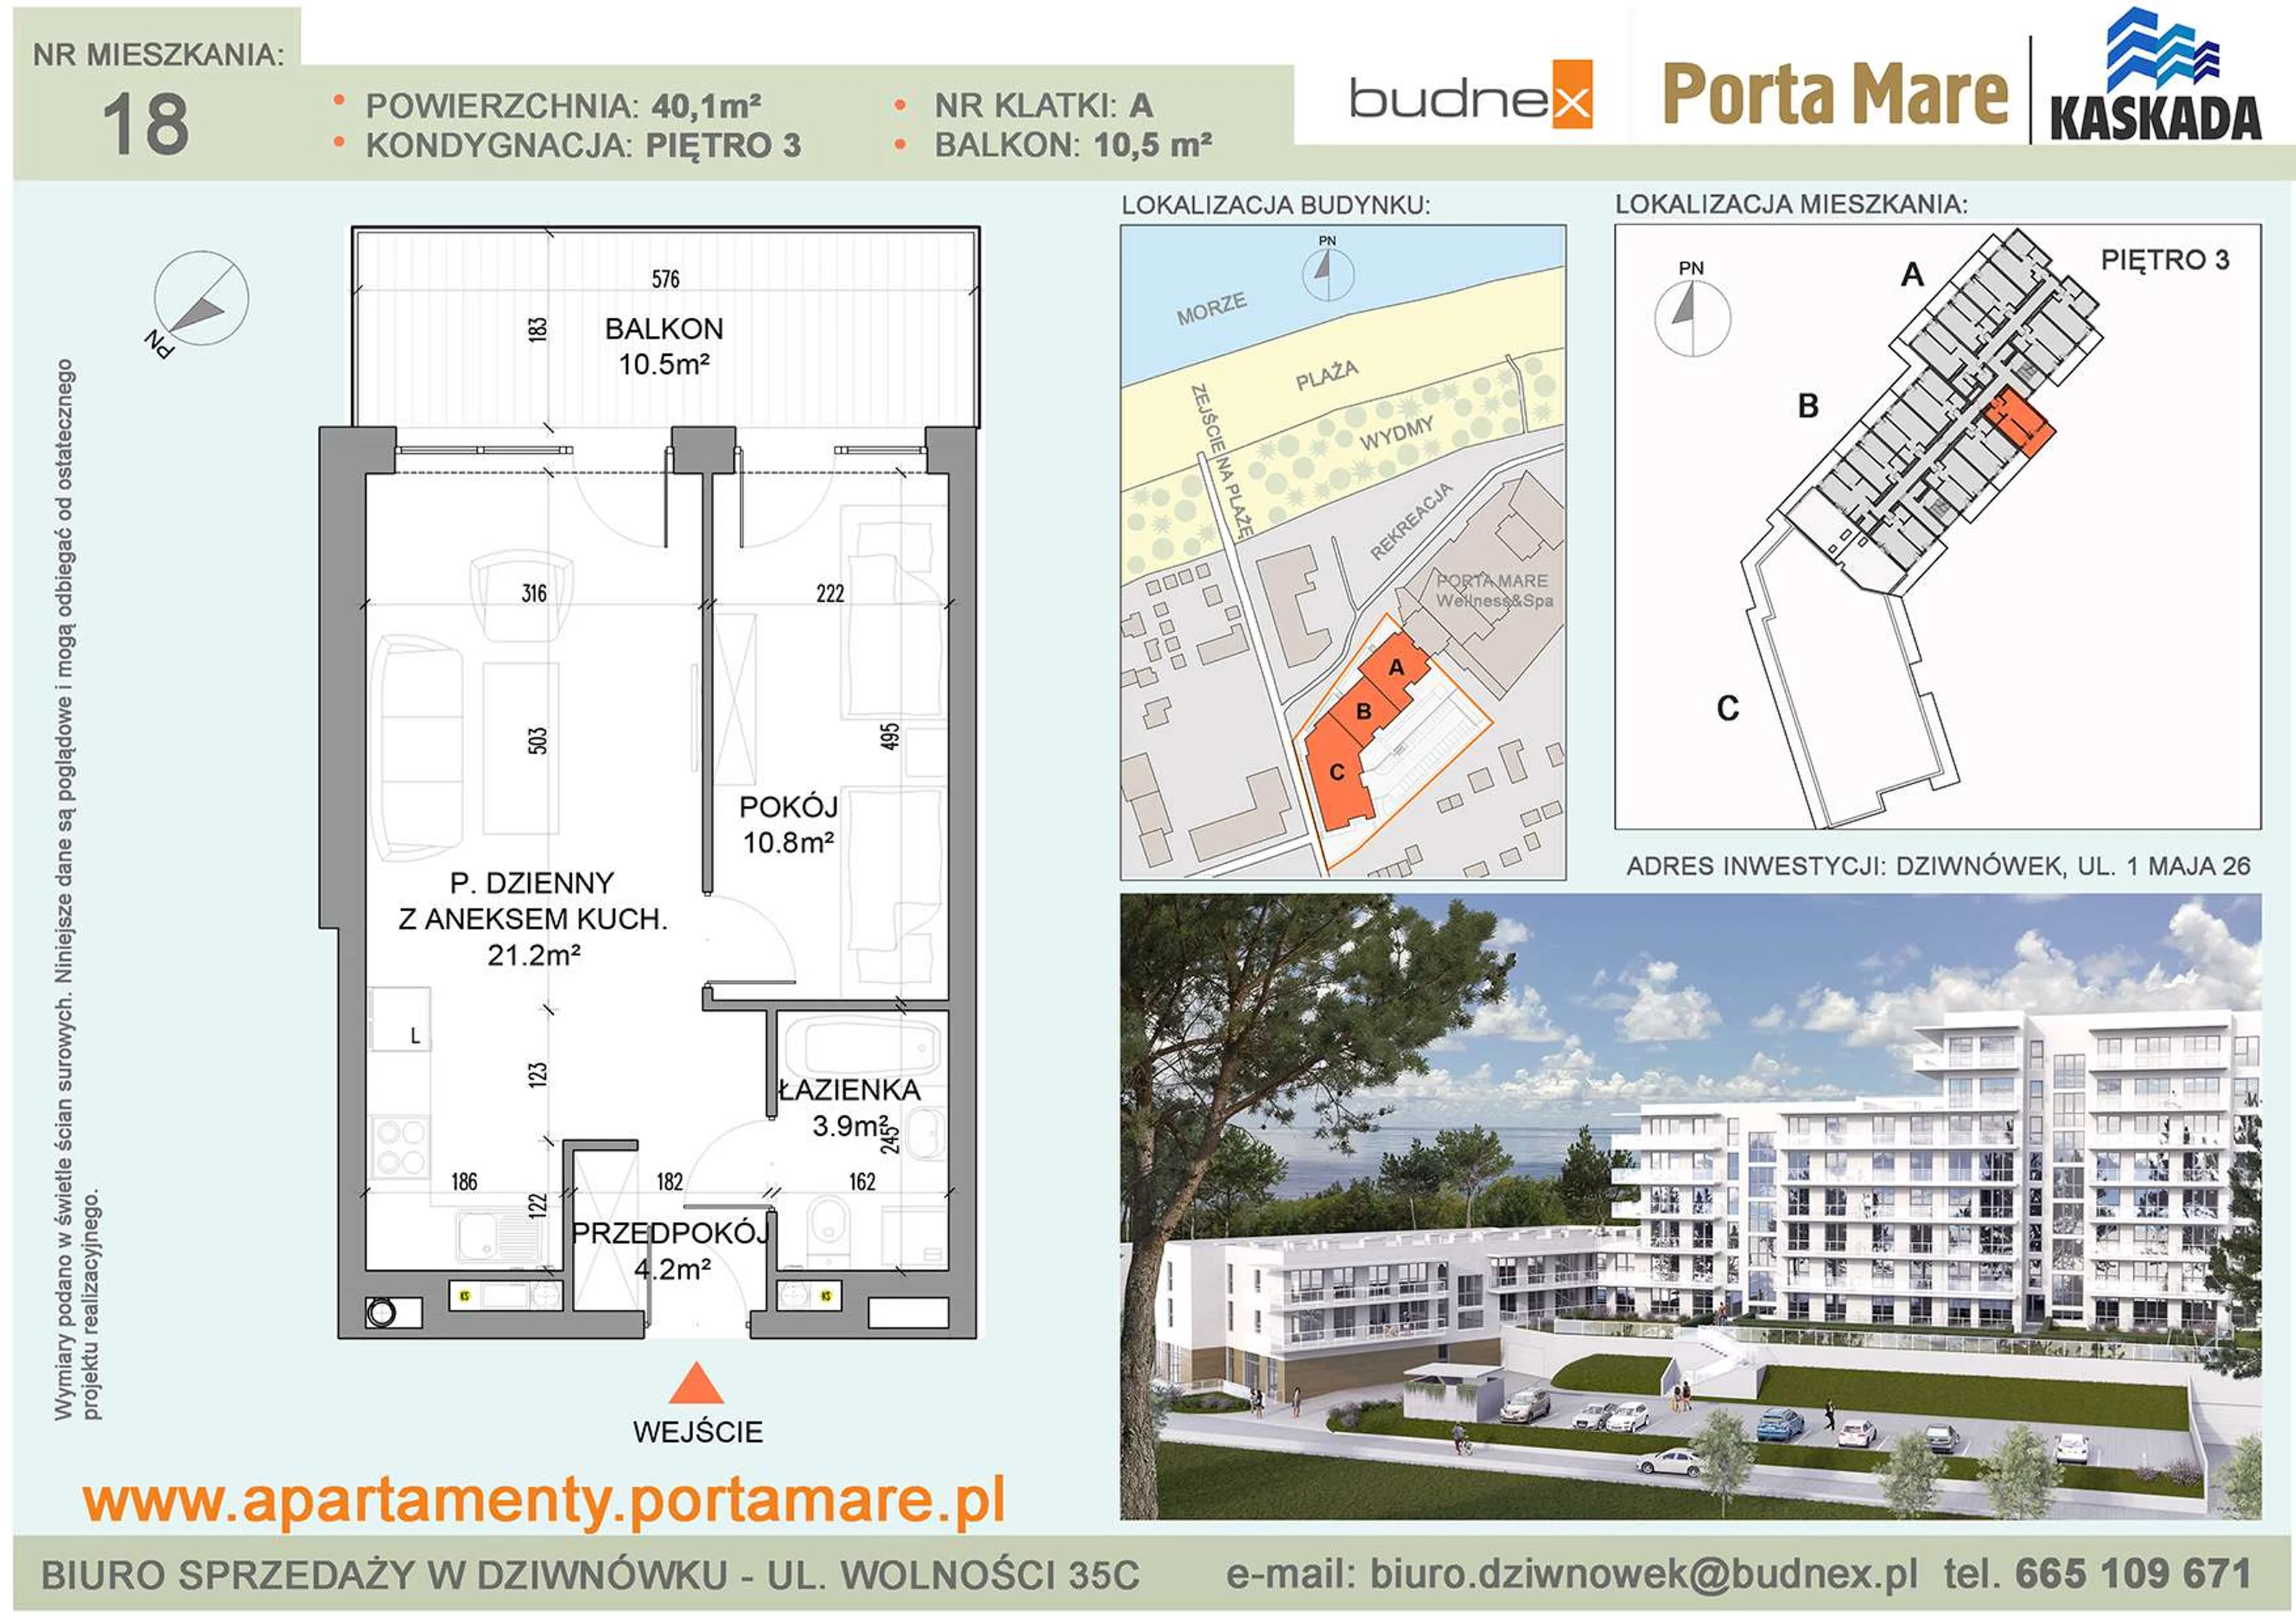 Apartament 40,10 m², piętro 3, oferta nr A/M18, Porta Mare Kaskada, Dziwnówek, ul. 1 Maja 26